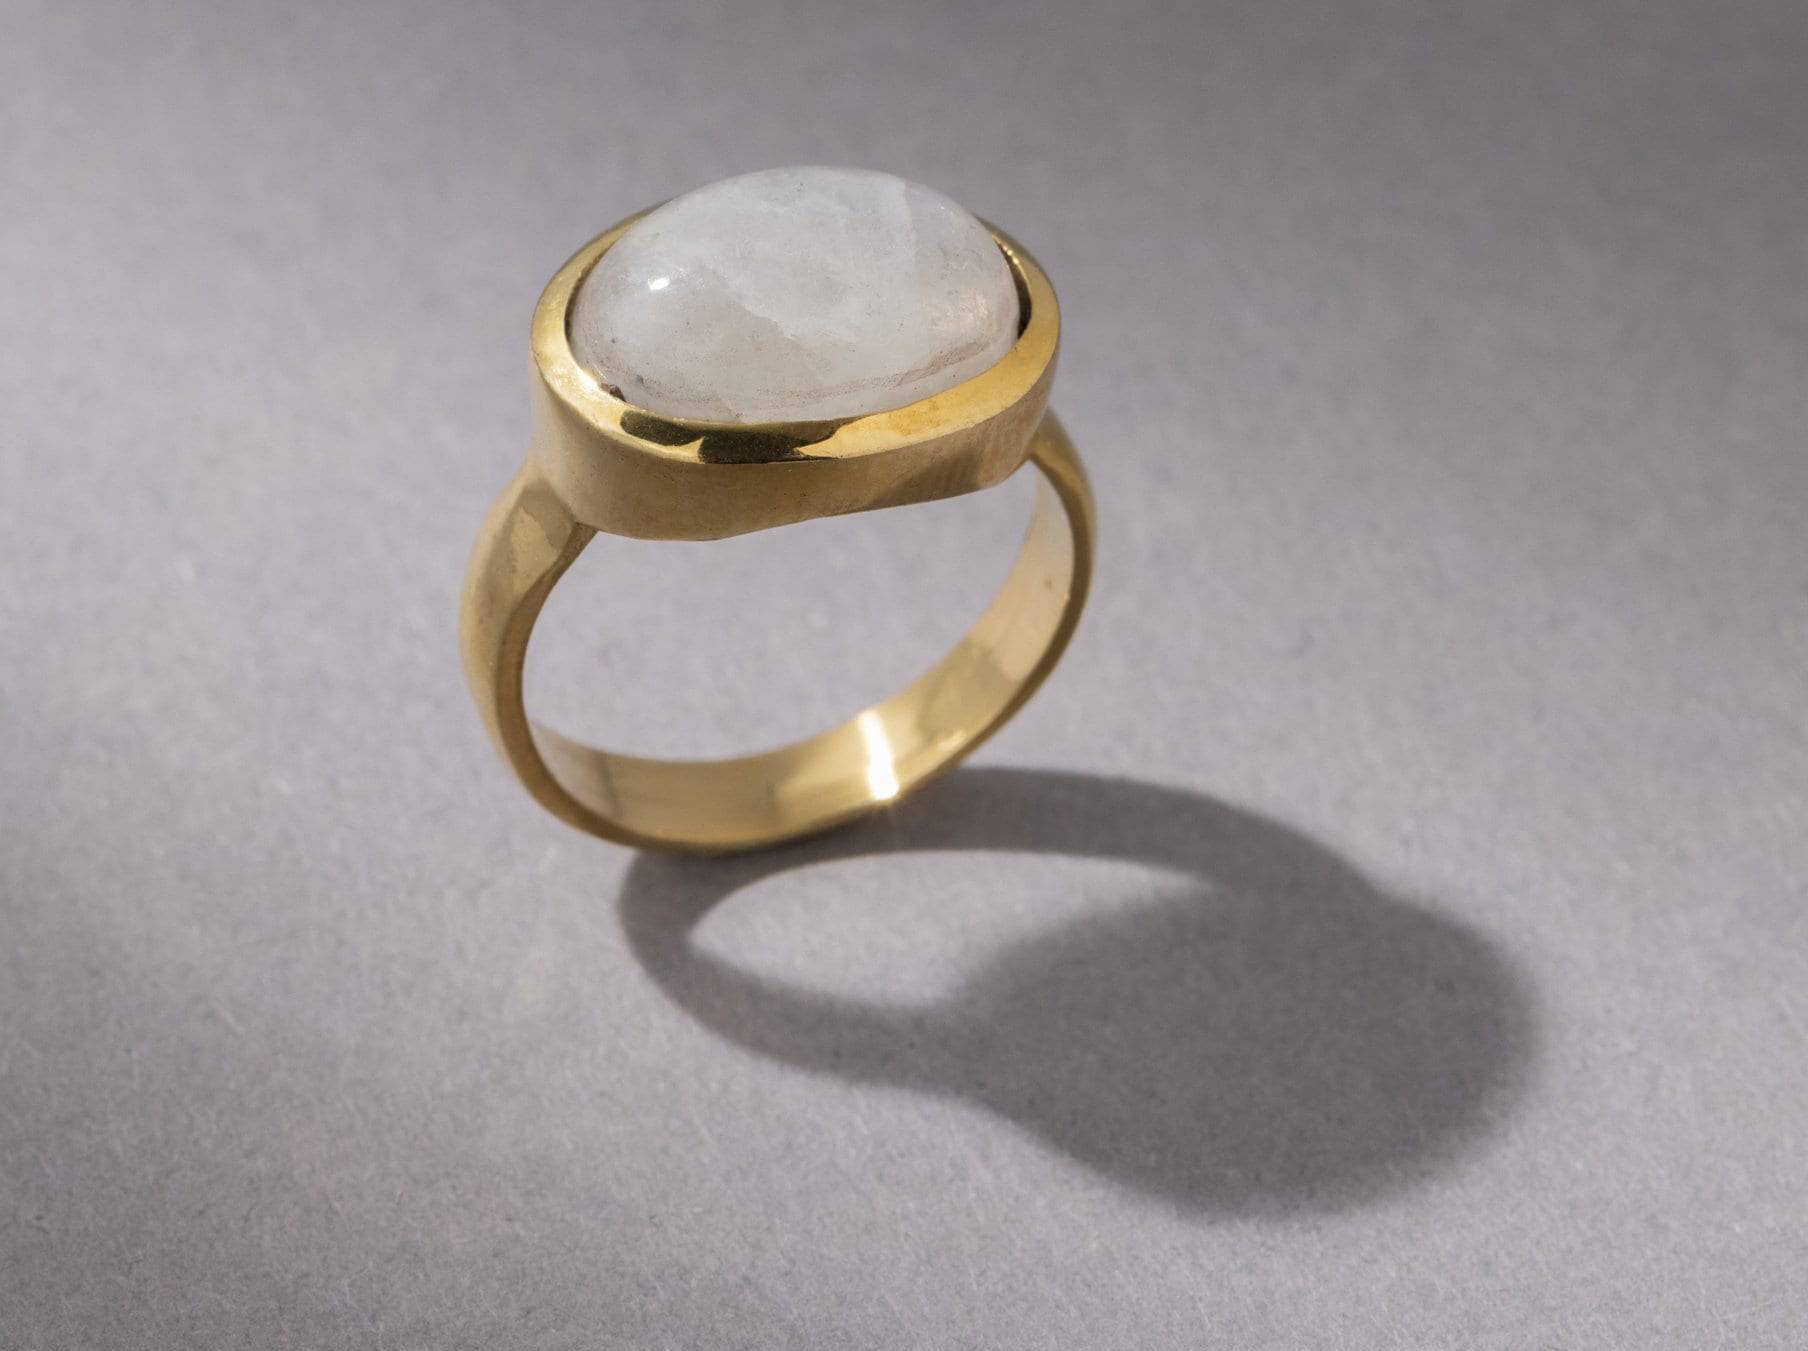 Großer Mondstein Ring mit ovalem Stein gold - NooeBerlin